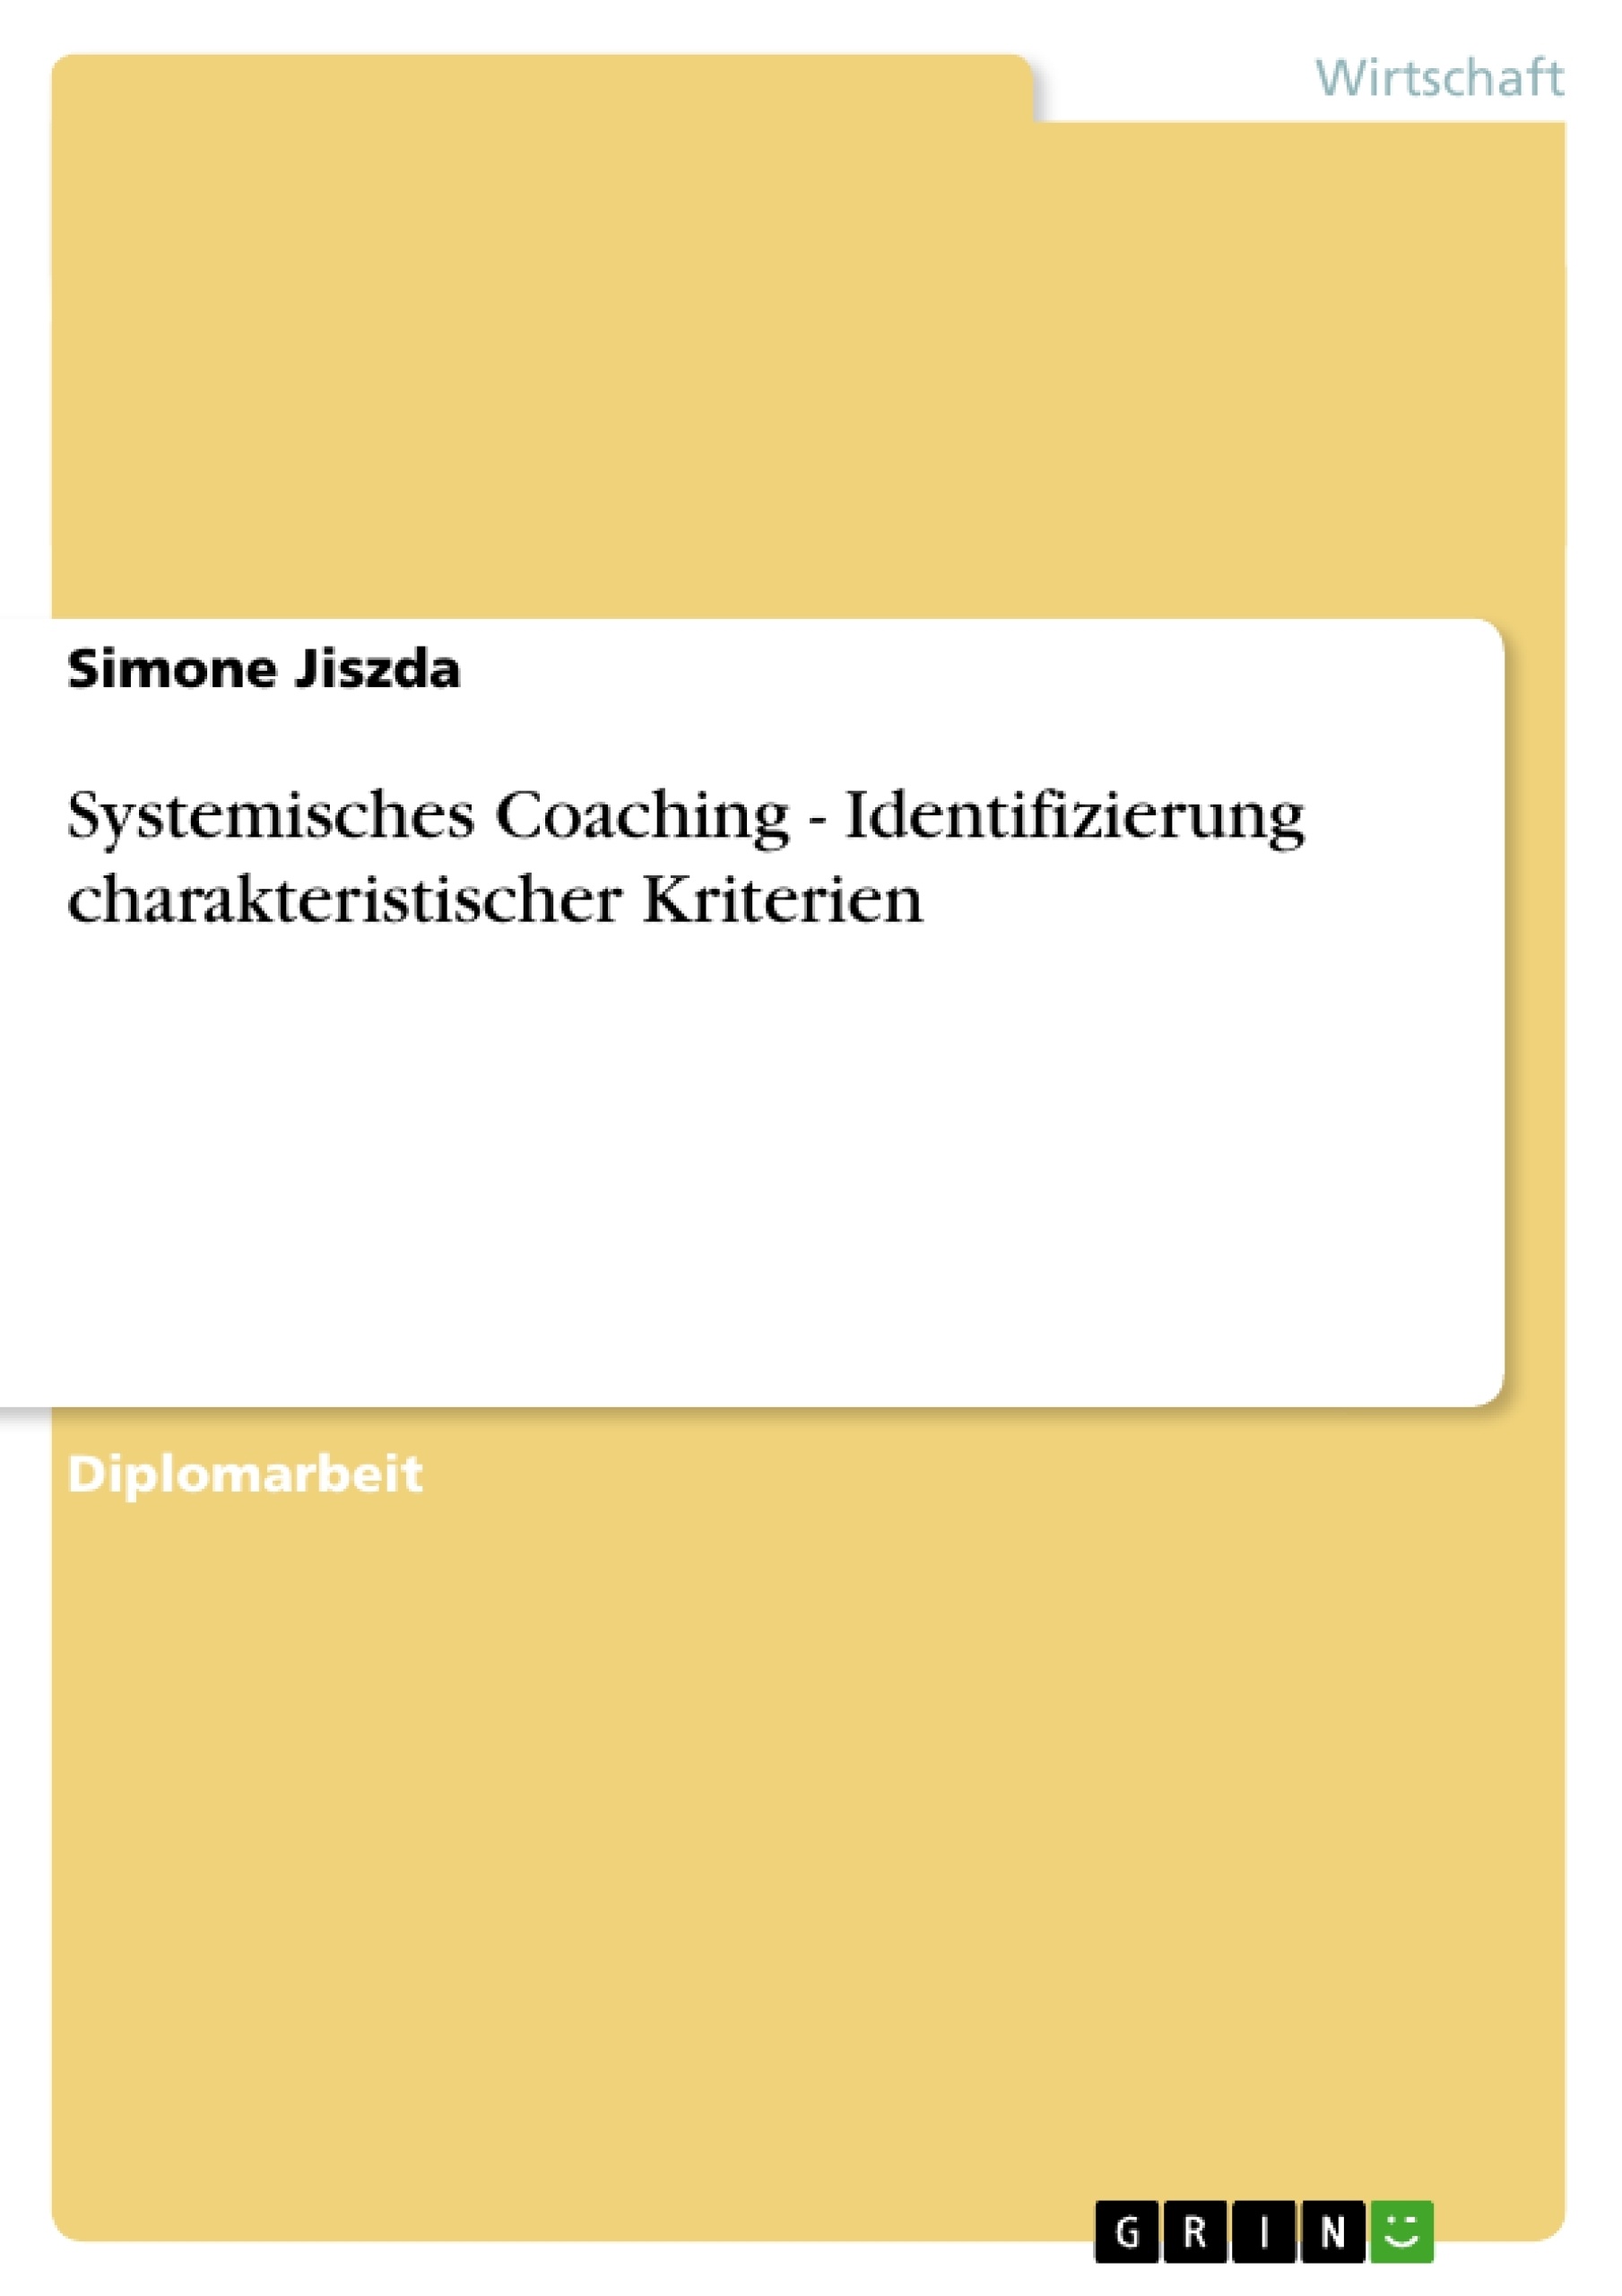 Title: Systemisches Coaching - Identifizierung charakteristischer Kriterien